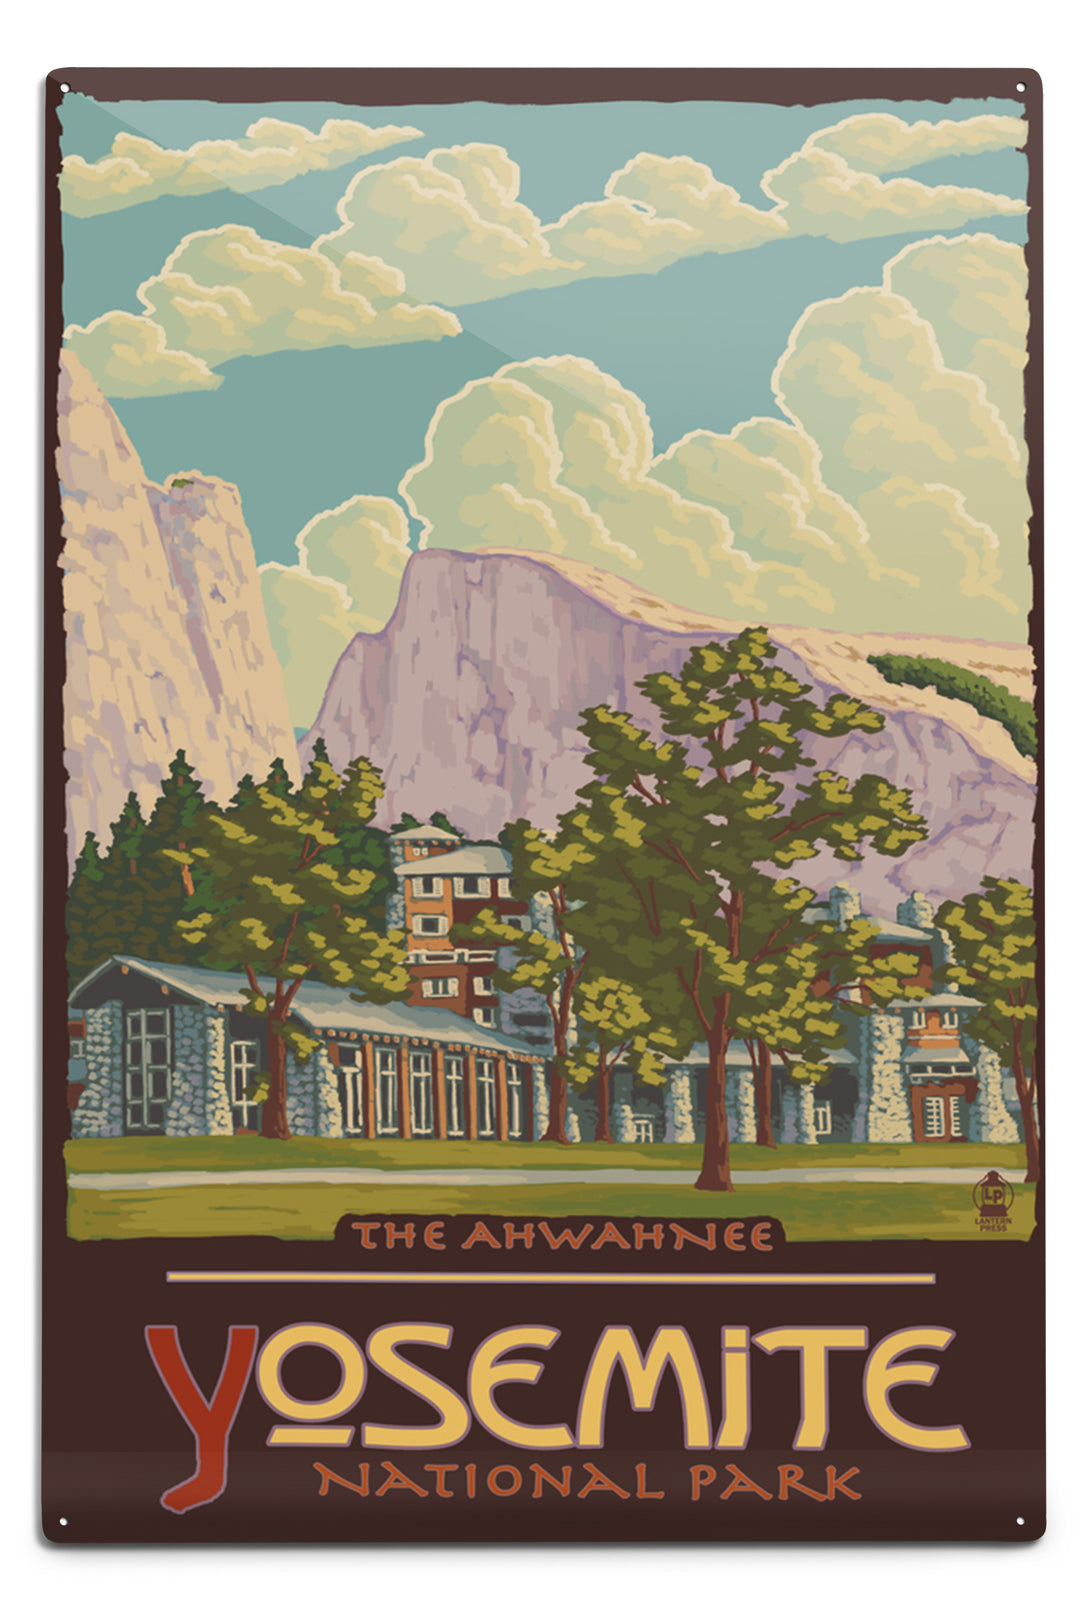 Yosemite National Park, California, The Ahwahnee and El Capitan, Metal Signs